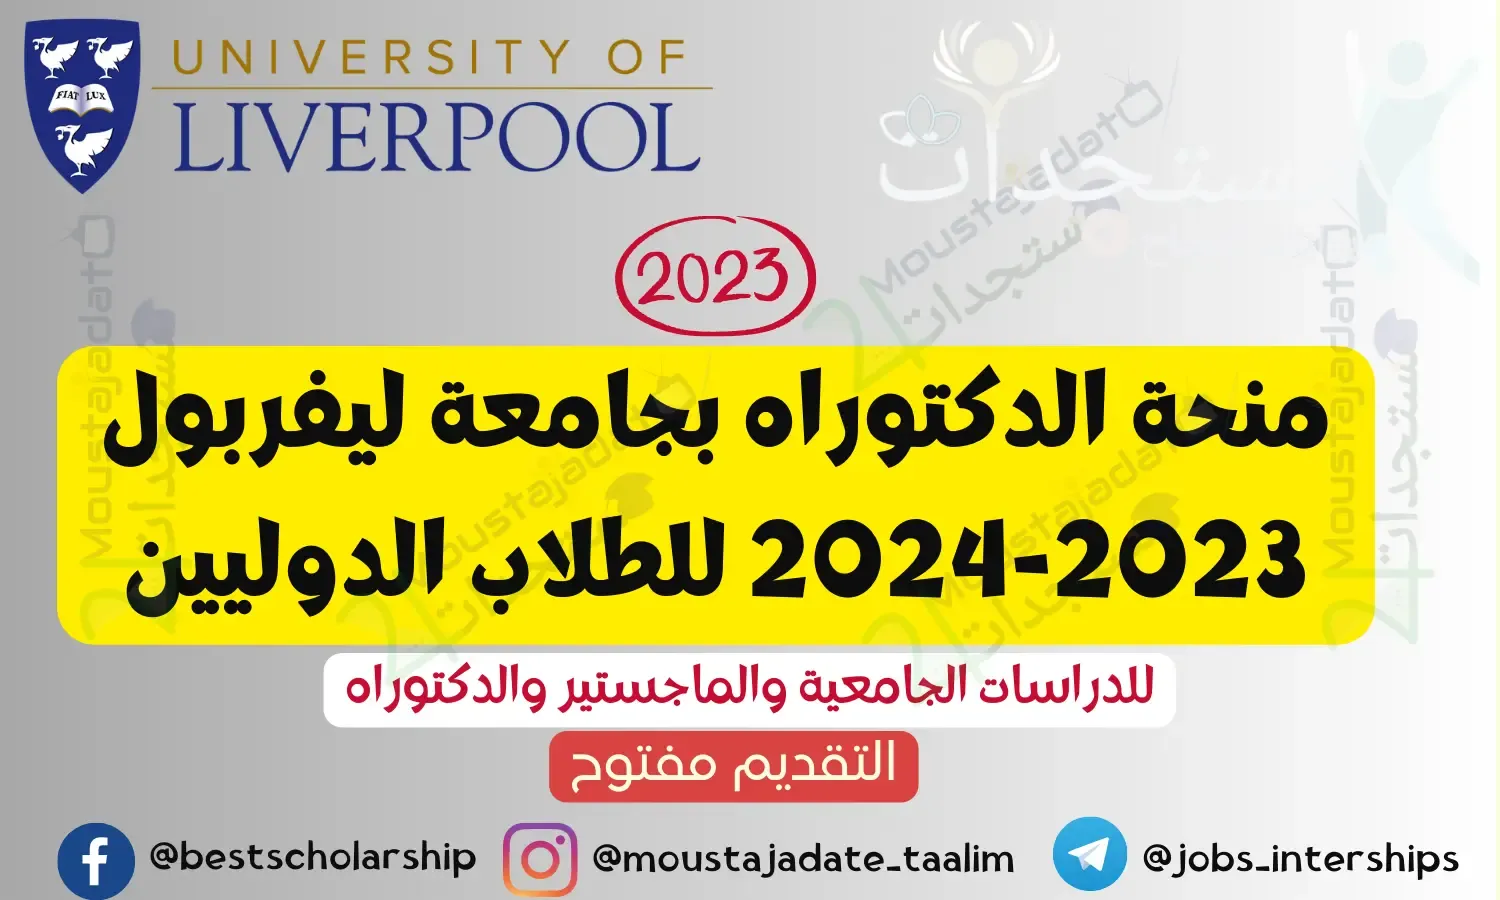 منحة الدكتوراه بجامعة ليفربول 2023-2024 للطلاب الدوليين